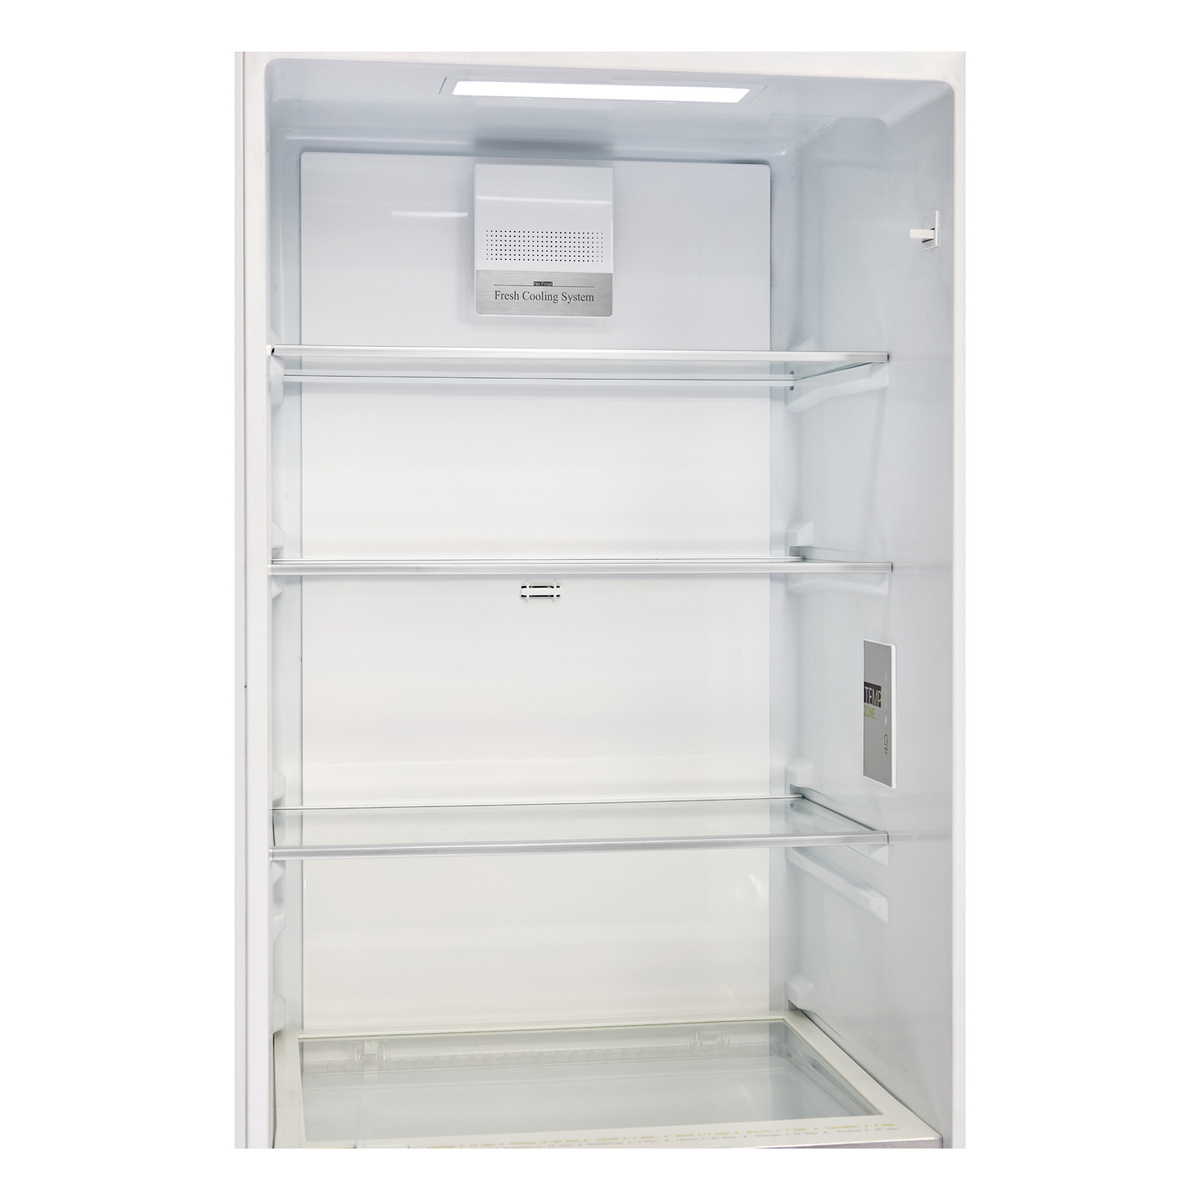 Холодильник Hyundai CC4023F, белый